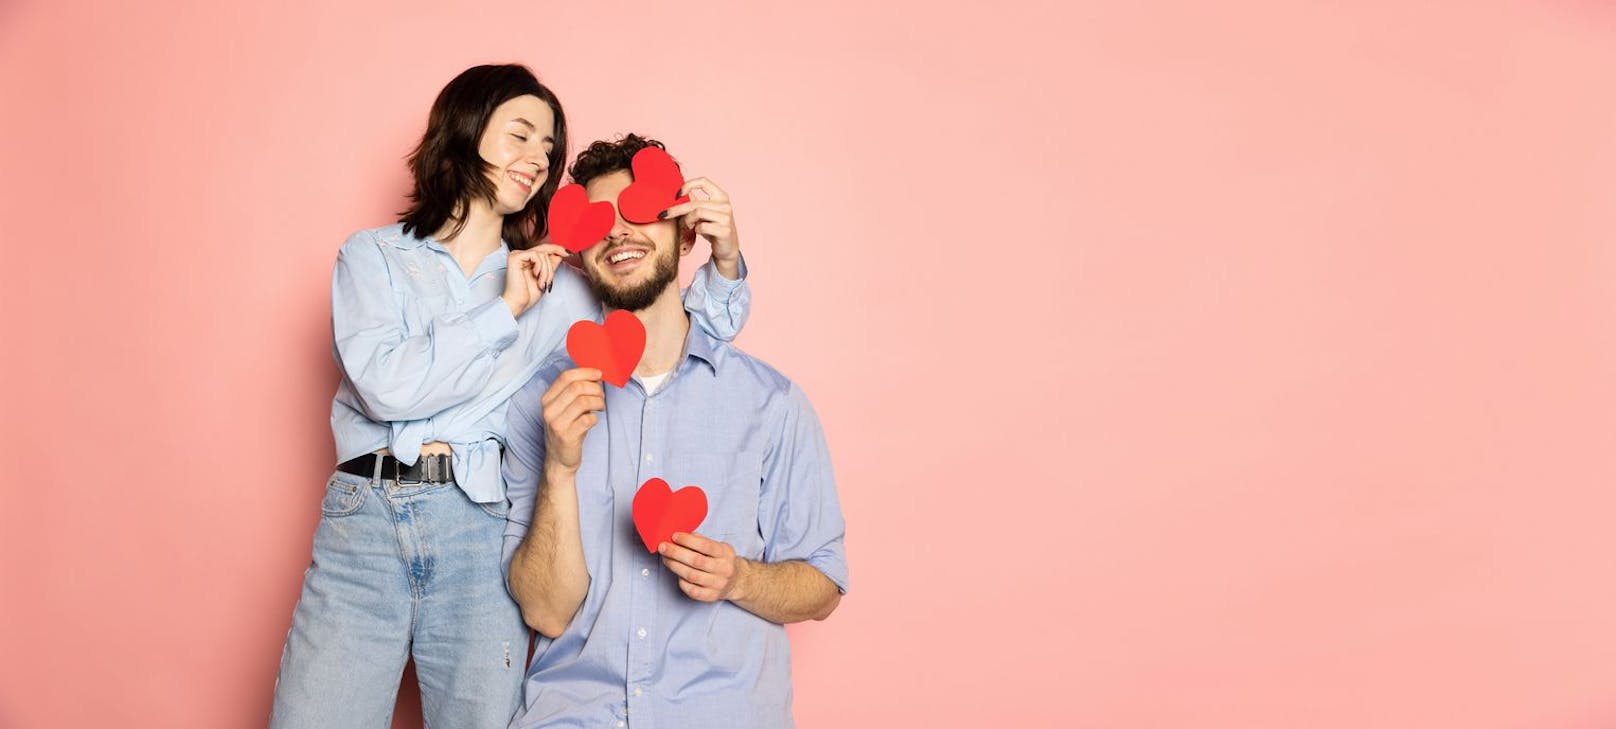 5 Valentinstags Outfit-Tipps für stylische Partner